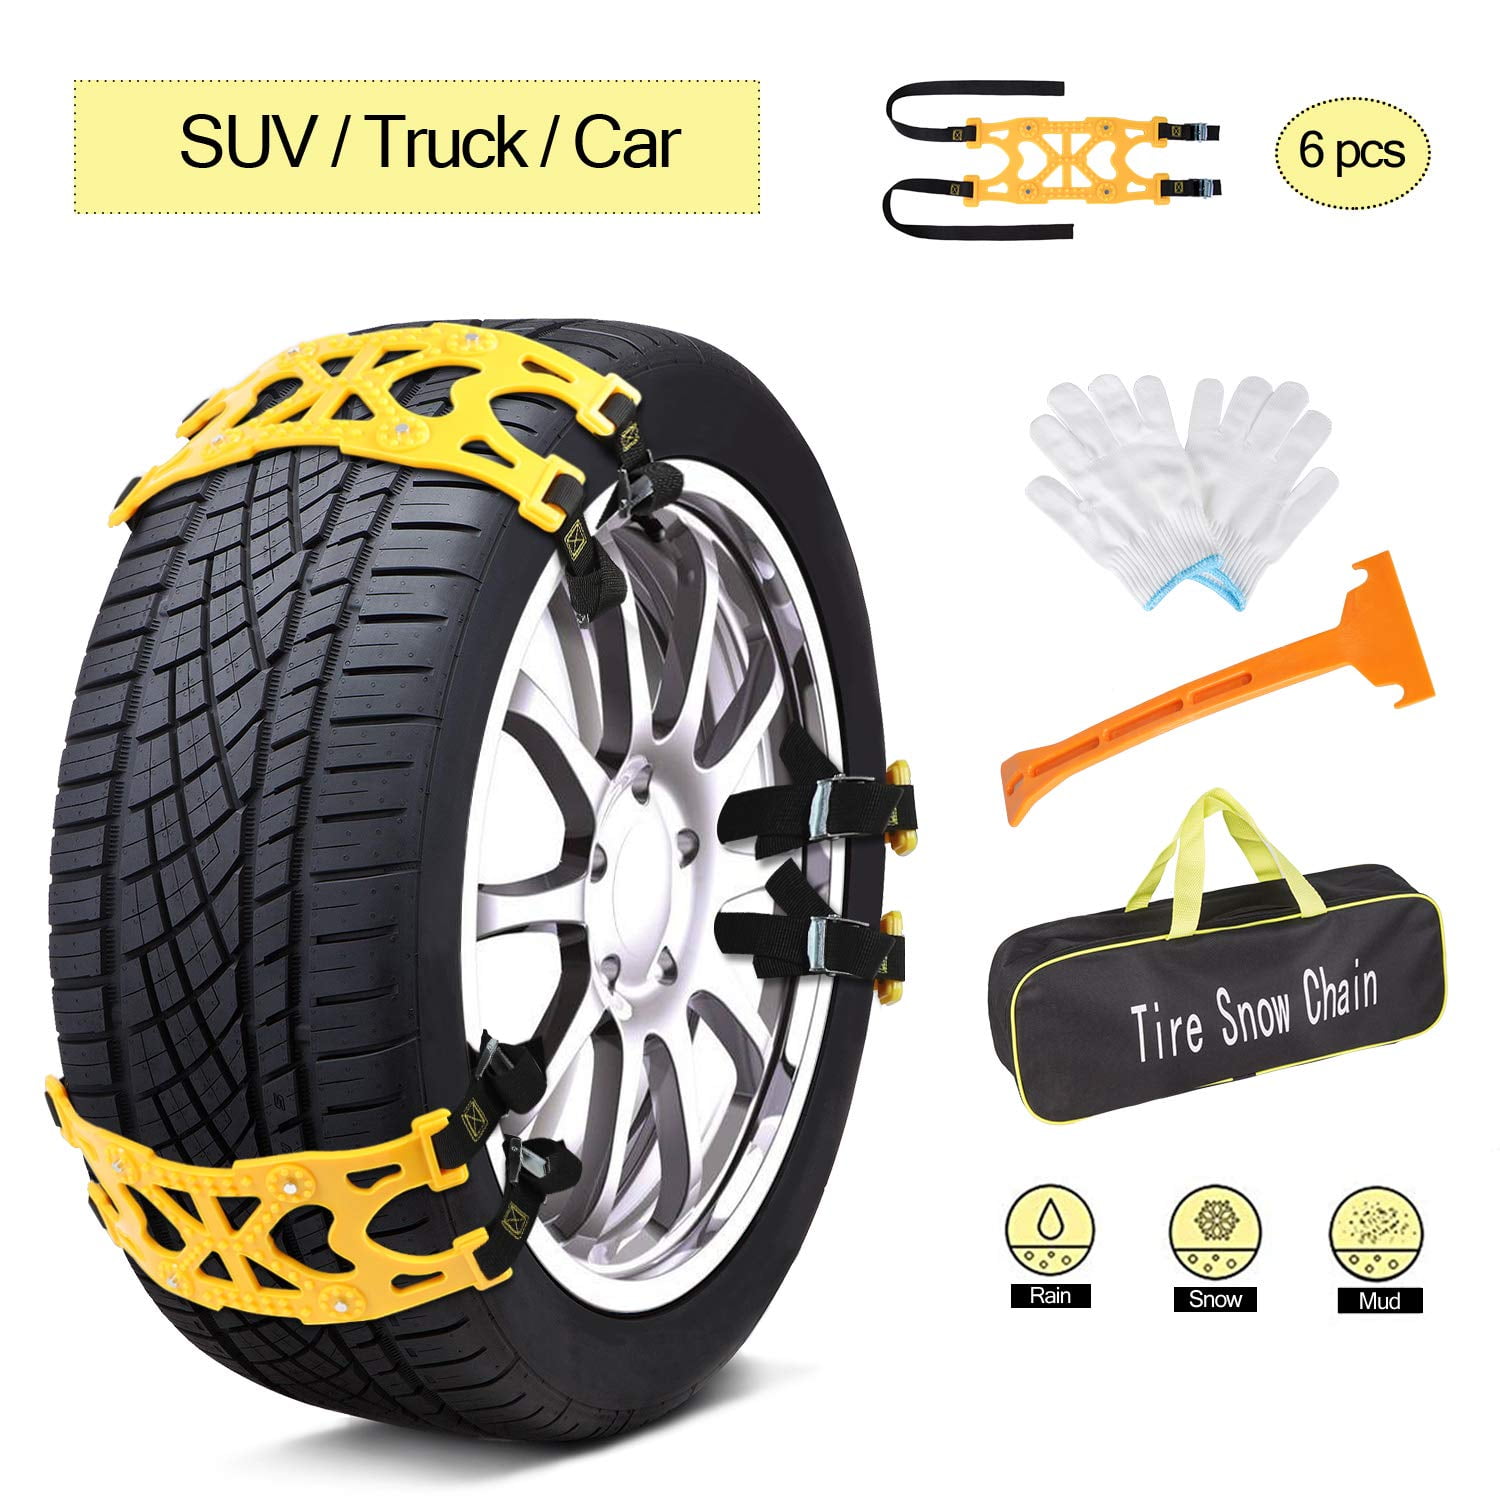 FD9D Universal Yellow TPU 5Pcs Tire Snow Chain Car Chains Anti-Skid Chains 